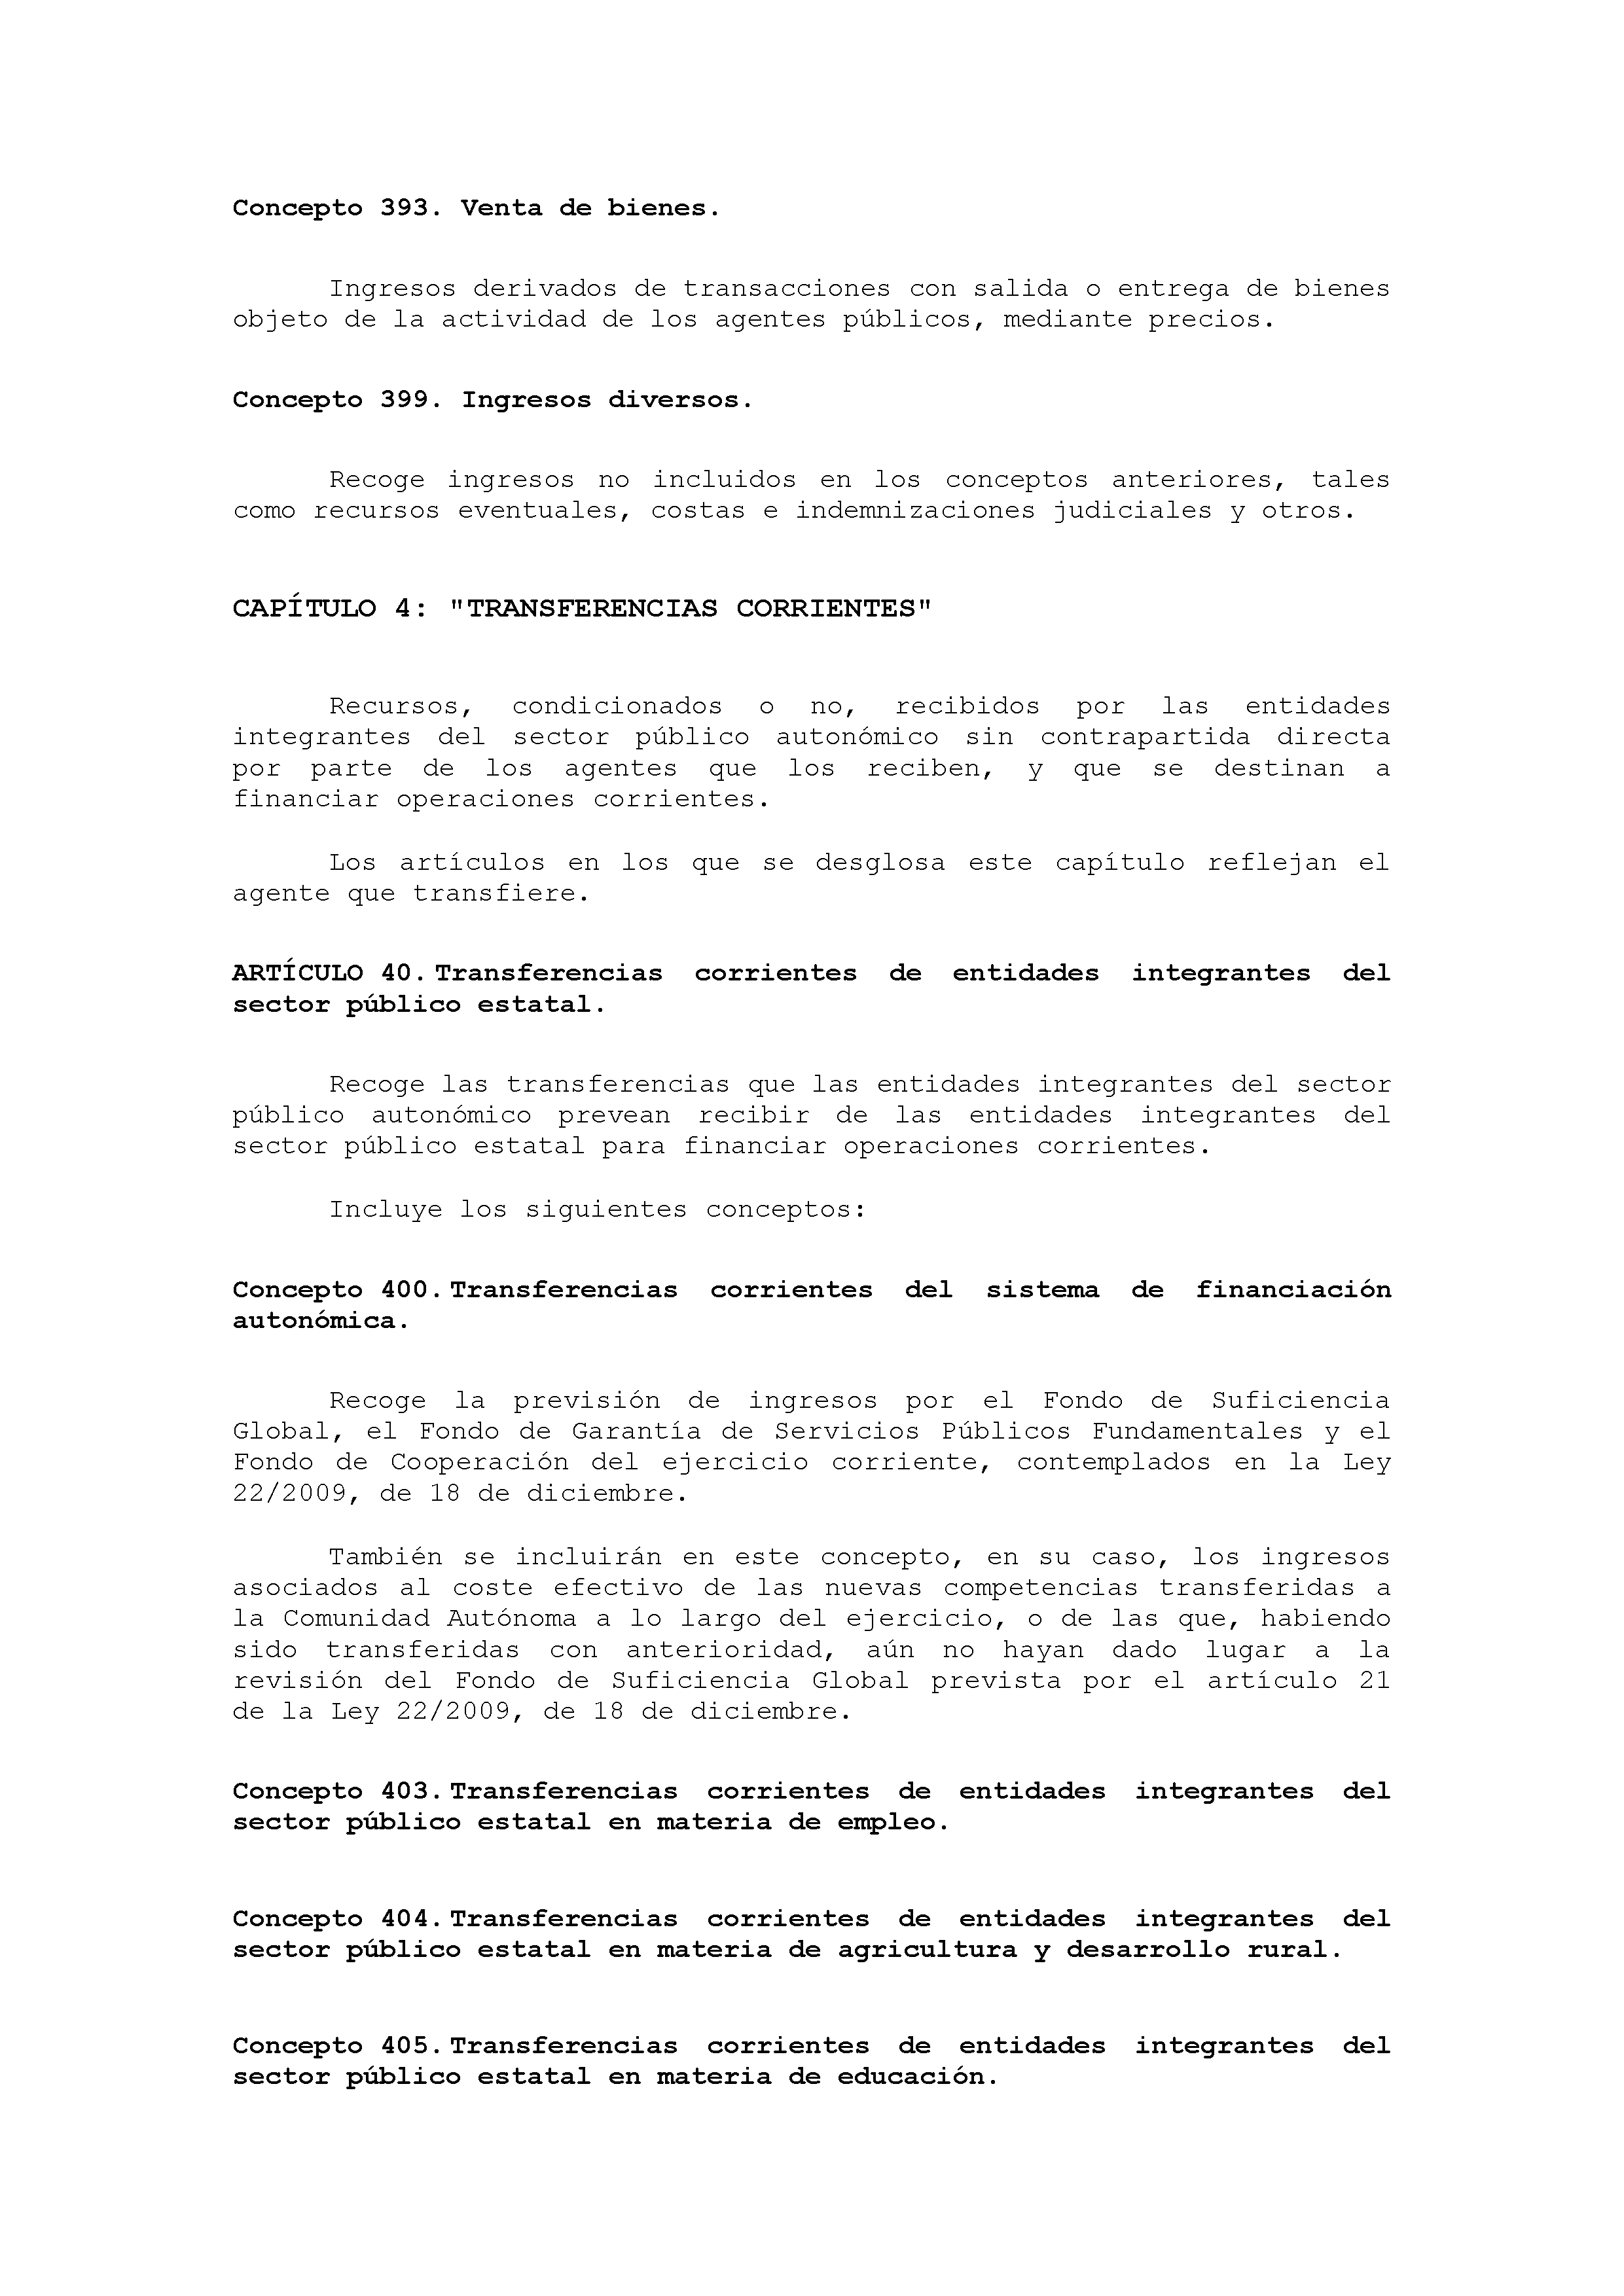 ANEXO VIII CÓDIGO DE LA CLASIFICACIÓN ECONÓMICA DE LOS INGRESOS PÚBLICOS Pag 11